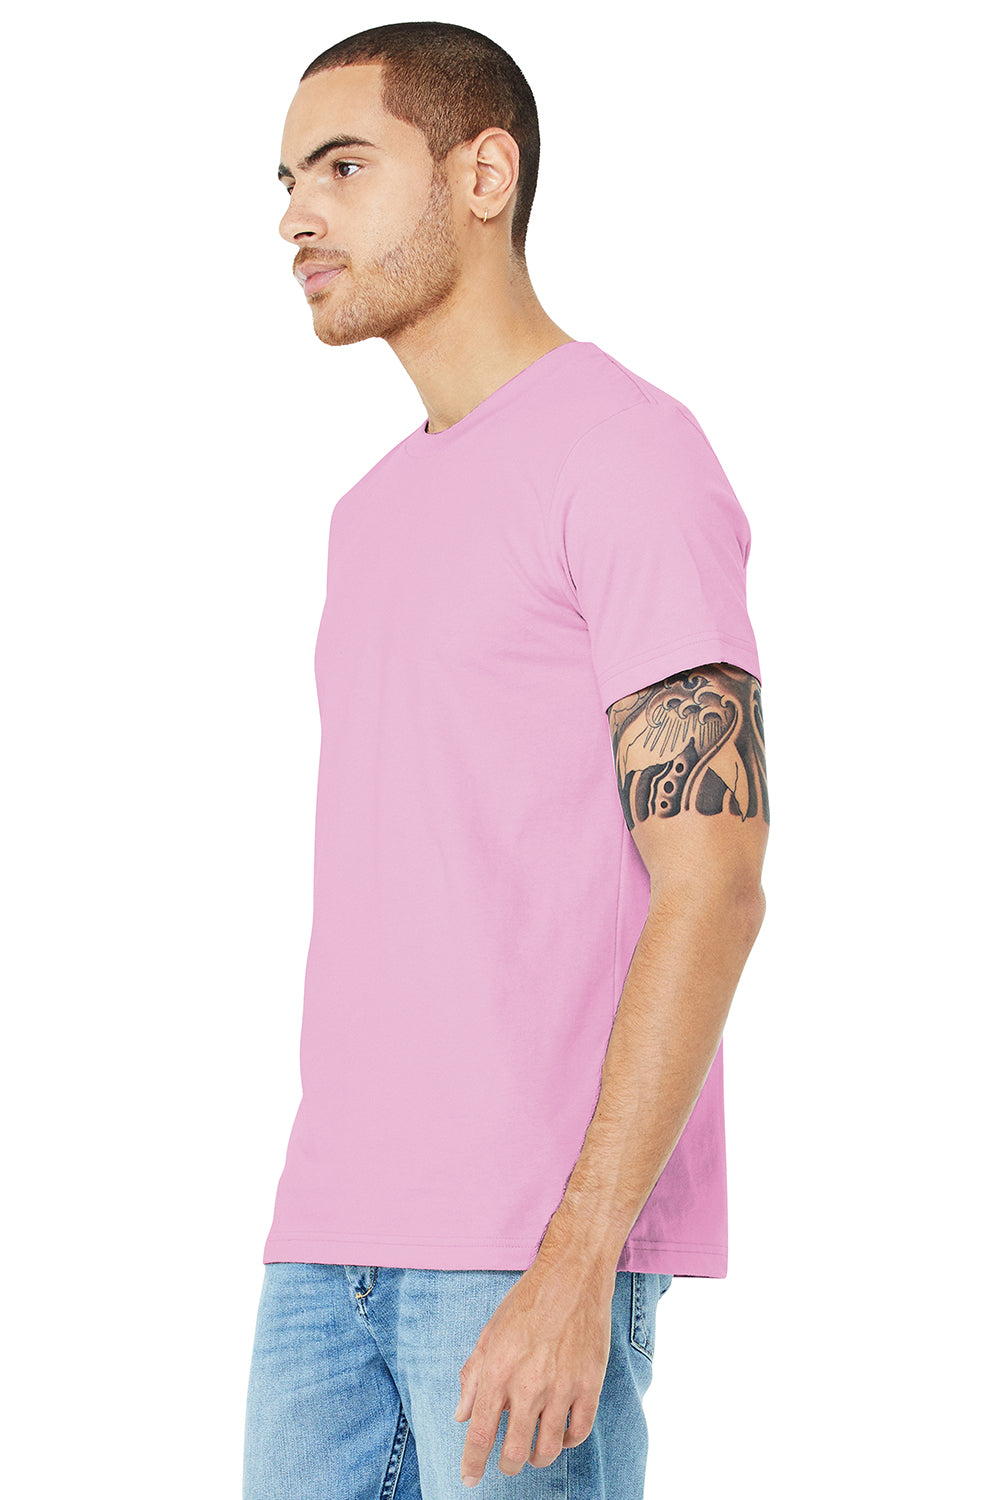 Bella + Canvas BC3001/3001C Mens Jersey Short Sleeve Crewneck T-Shirt Lilac Pink Model 3Q